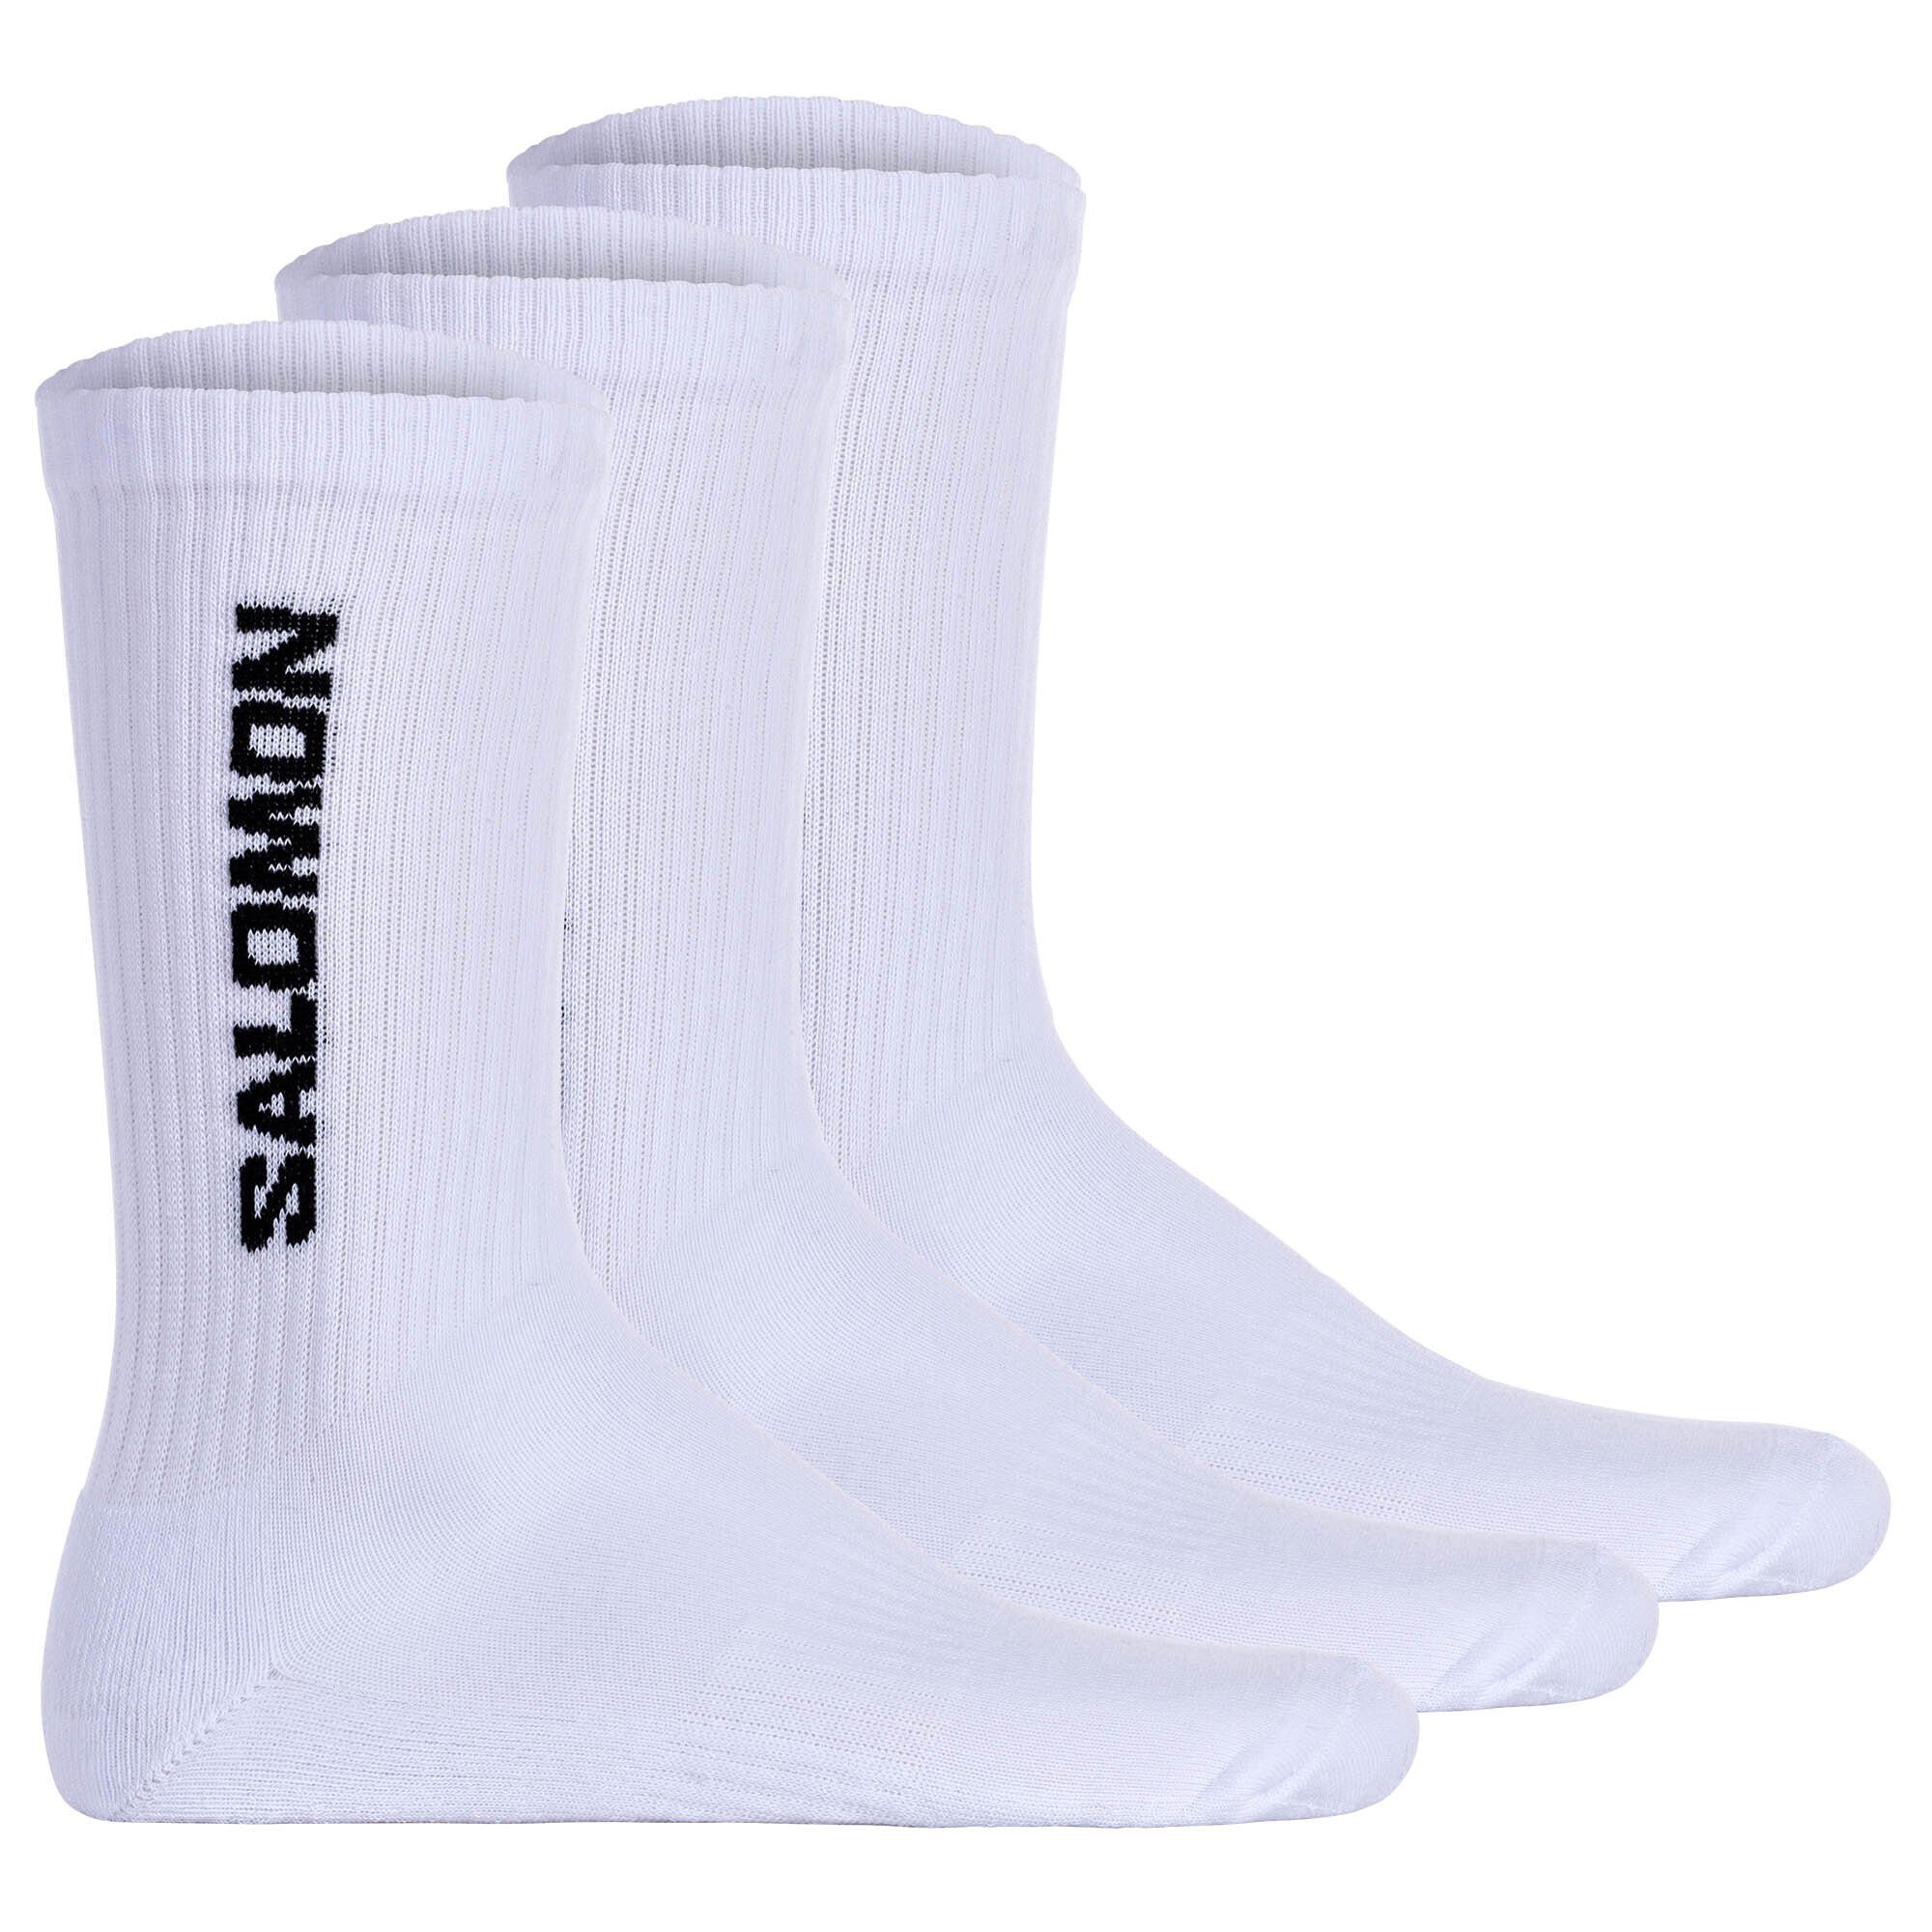 Salomon Спортивные носки Unisex Носки, 3er Pack - EVERYDAY CREW, Frottee